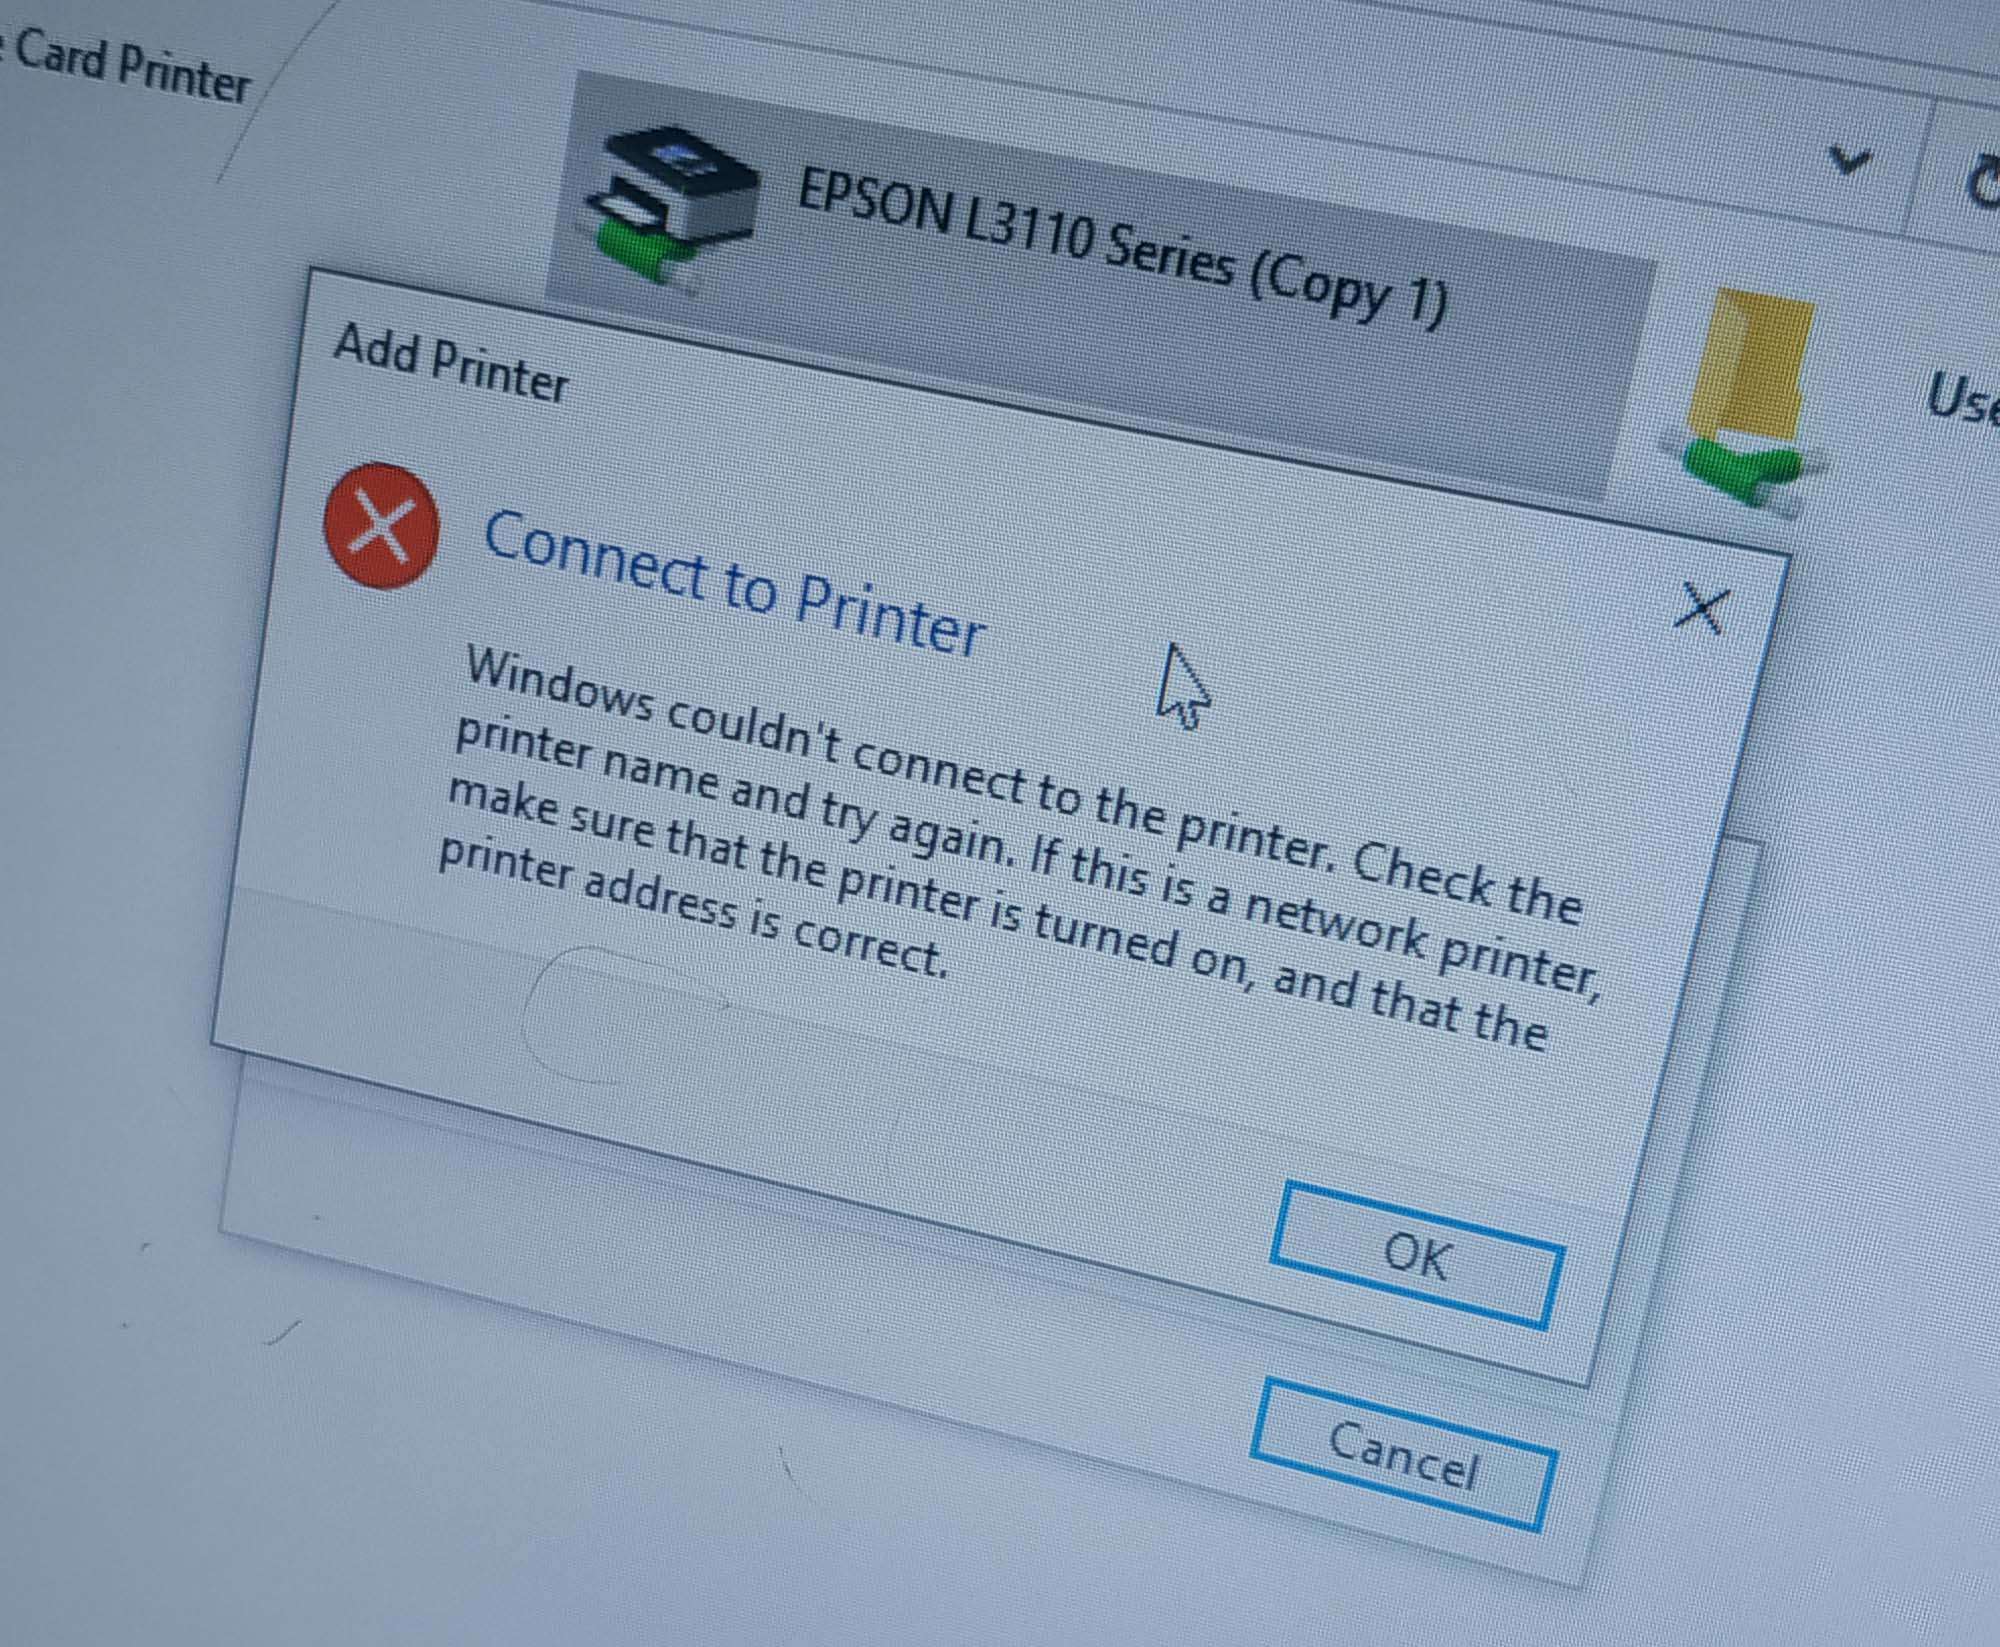 Verbindung zu allen Druckern über Netzwerk herstellen Windows konnte keine Verbindung zum Drucker herstellen